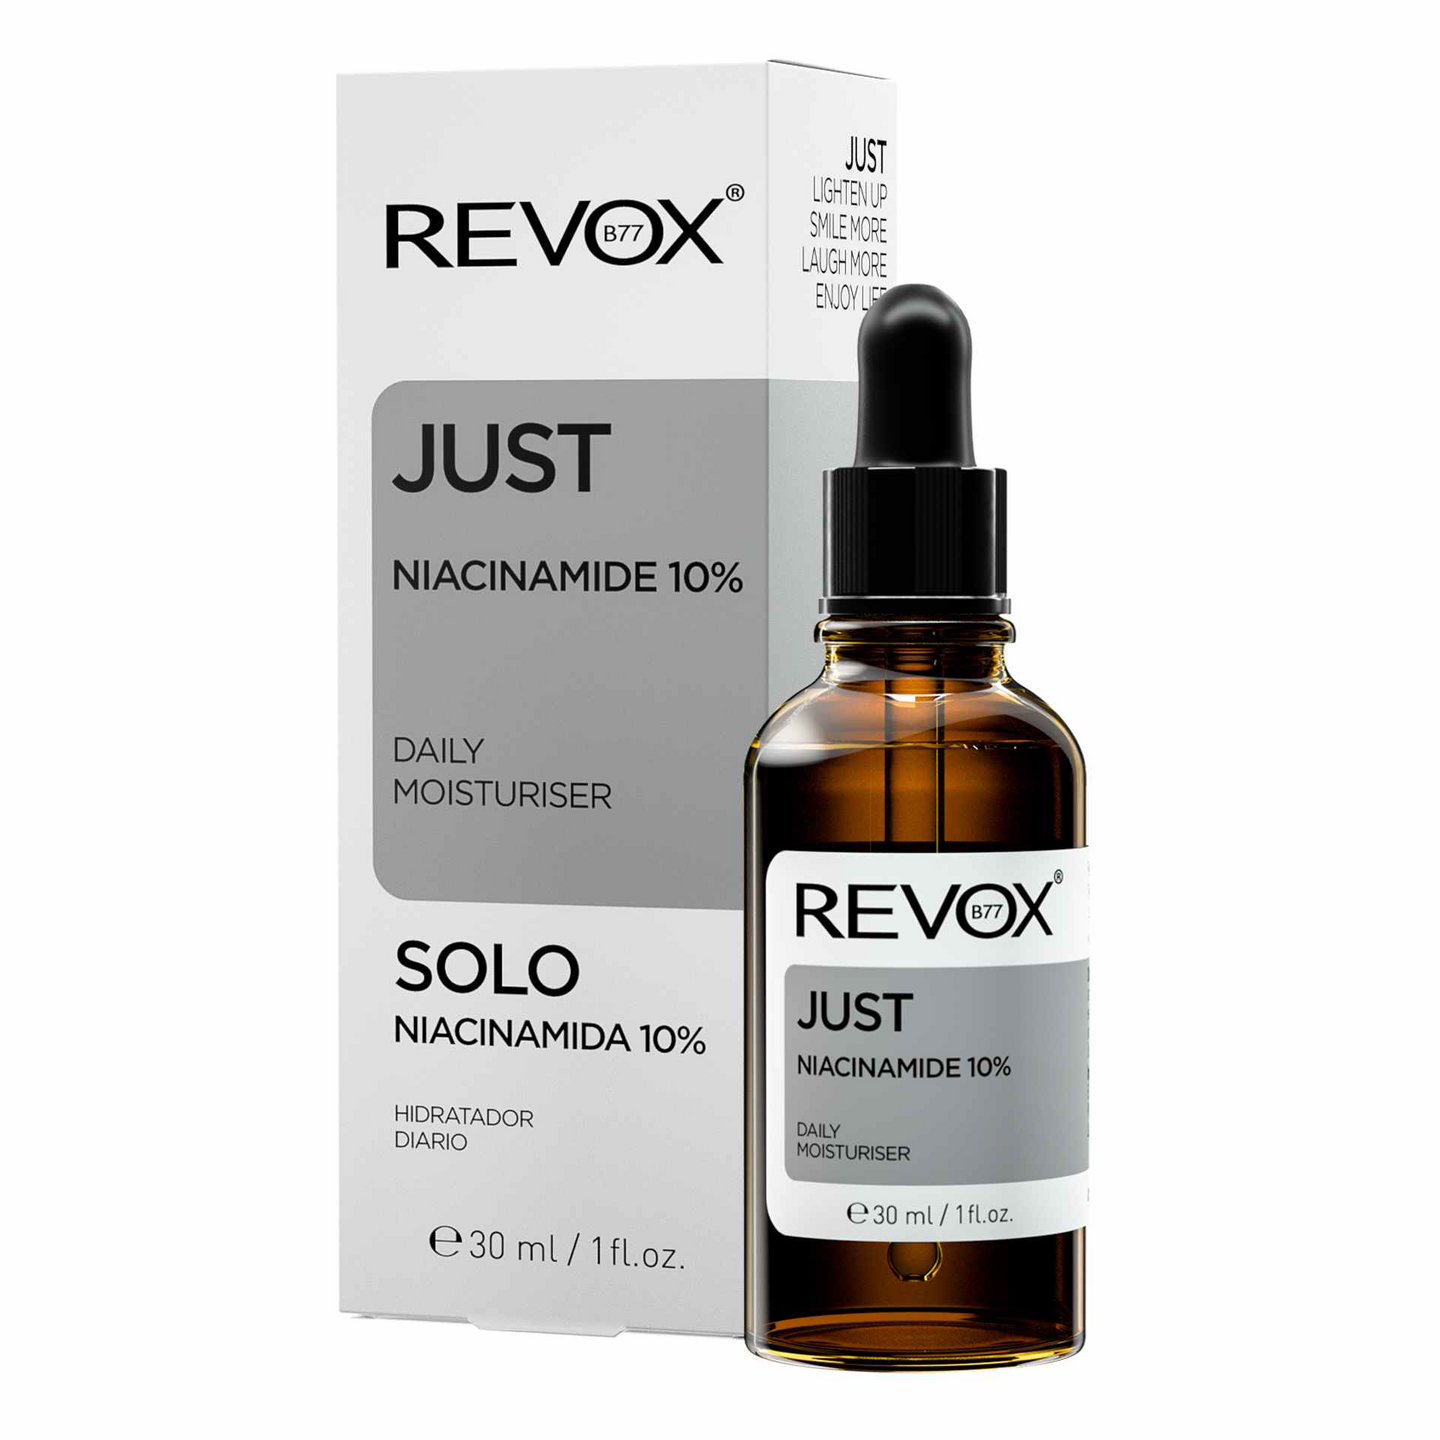 Revox B77 Just Niaciamide 10% kasvoseerumi 30ml